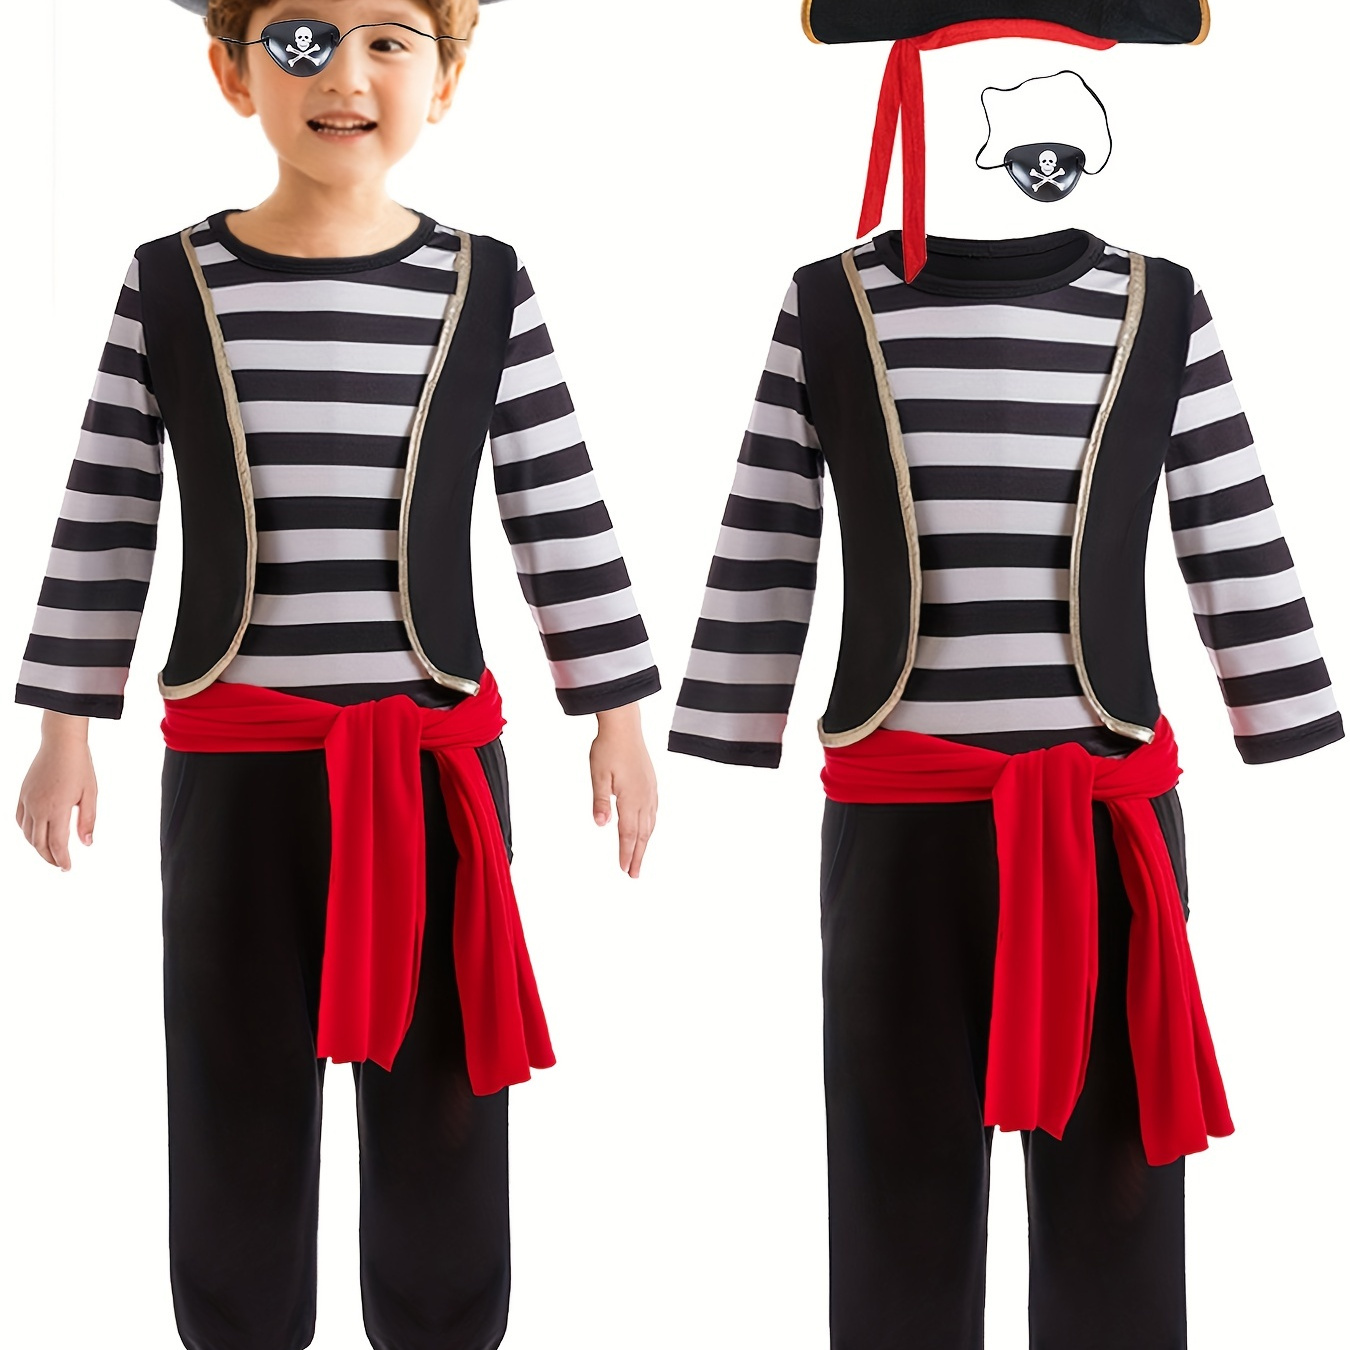 Costume Pirata Bambini Ragazzi Halloween Carnevale Cosplay